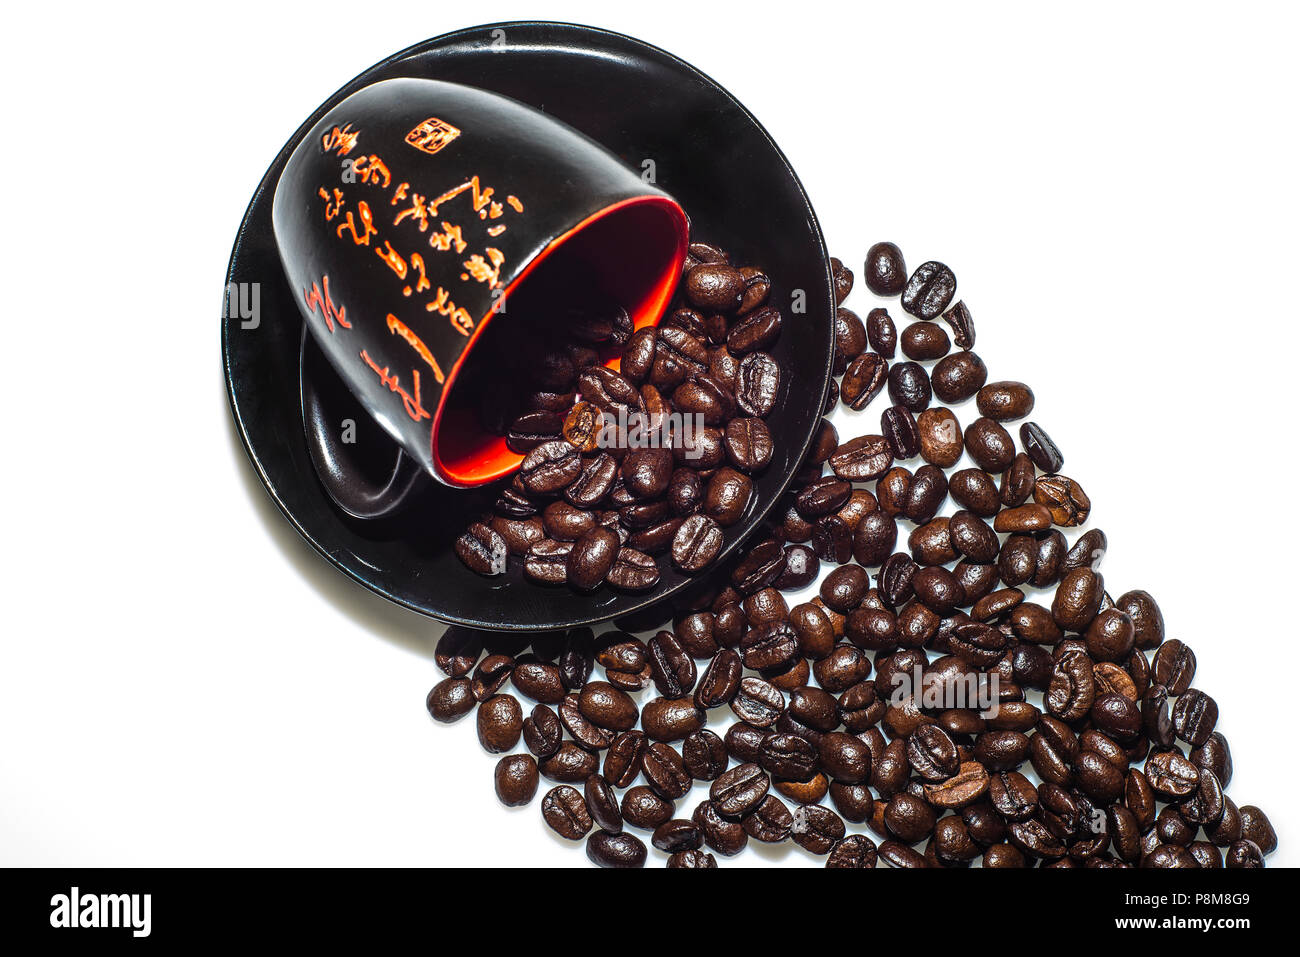 Eine grosse Auswahl an kostenlosen Kaffee. Finden Sie eine andere Art von Bilder von Kaffee inklusive Bilder von Tassen Kaffee, Kaffeetassen, Kaffeebohnen Stockfoto